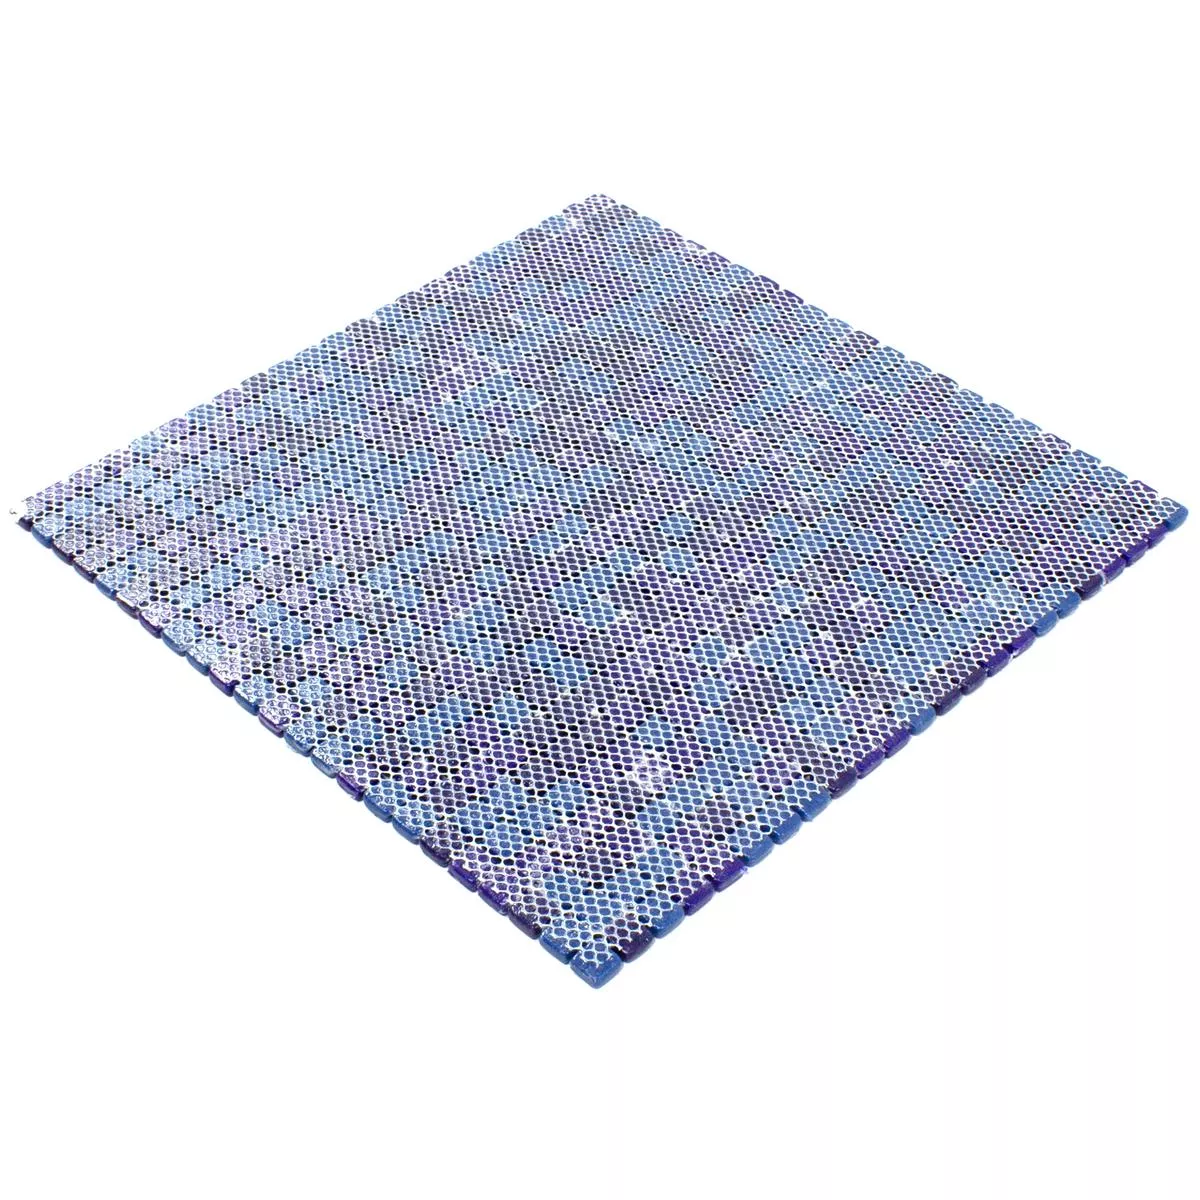 Skleněná Mozaika Dlaždice Delight Modrá Mix